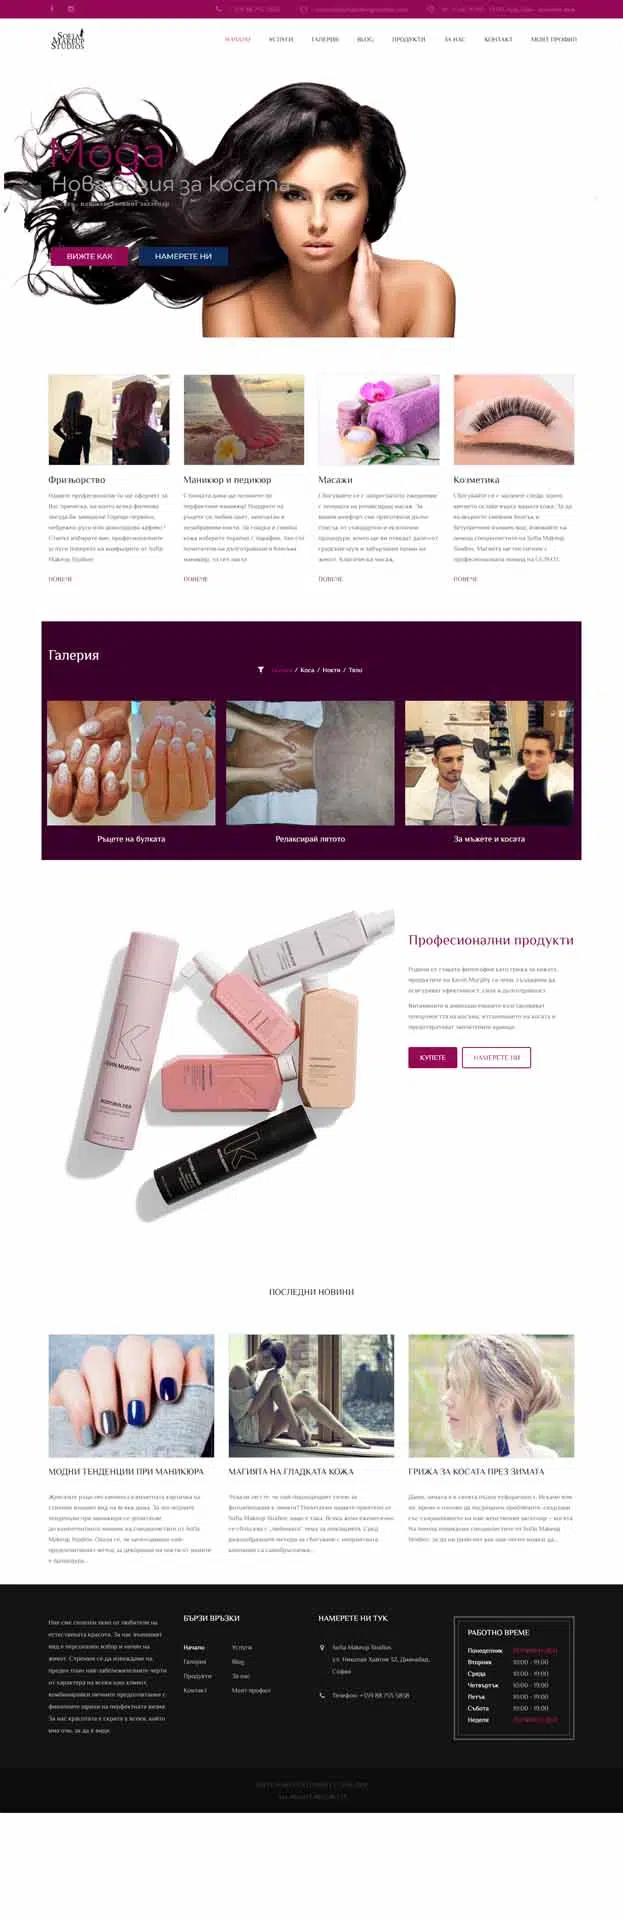 CarpeDiem- Sofia Makeup Studios Website (9)